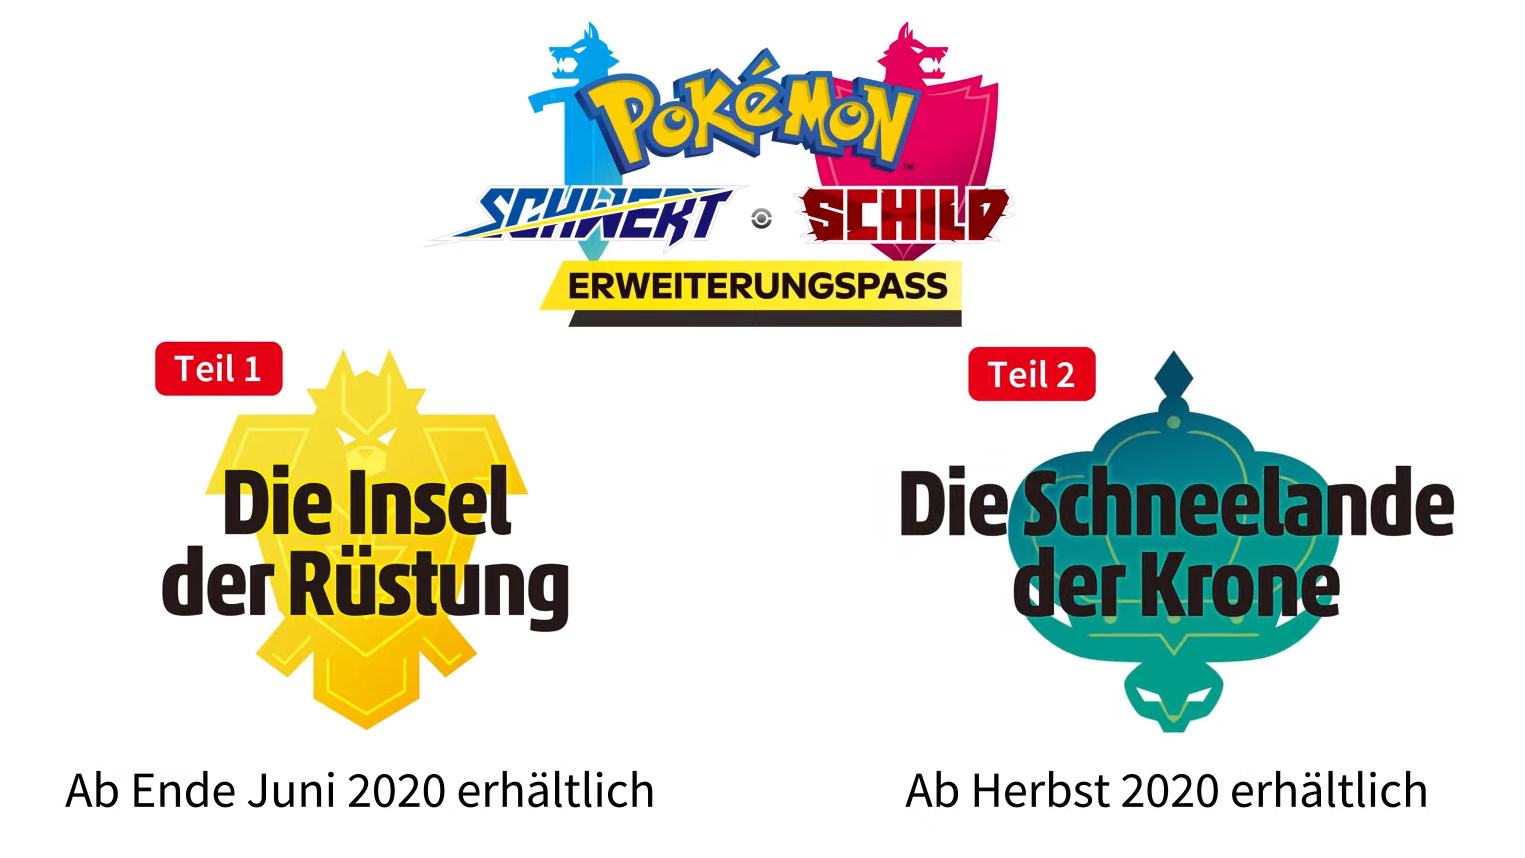 & erhält - Erweiterungen zwei Pokémon 2020 Schwert Schild News